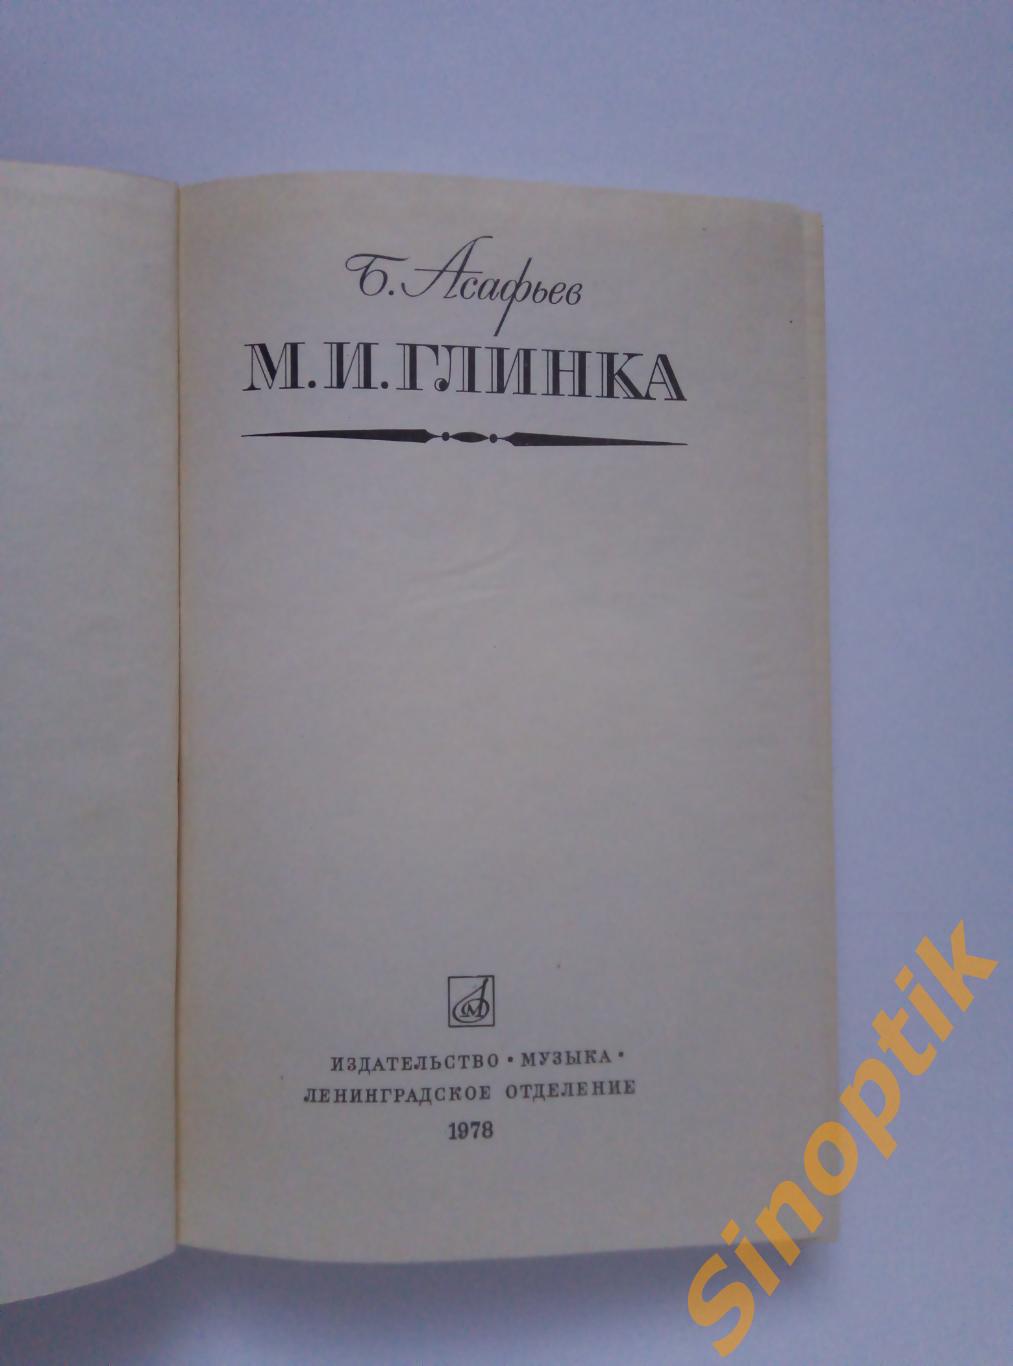 Б. Асафьев, М. И. Глинка, 1978 1